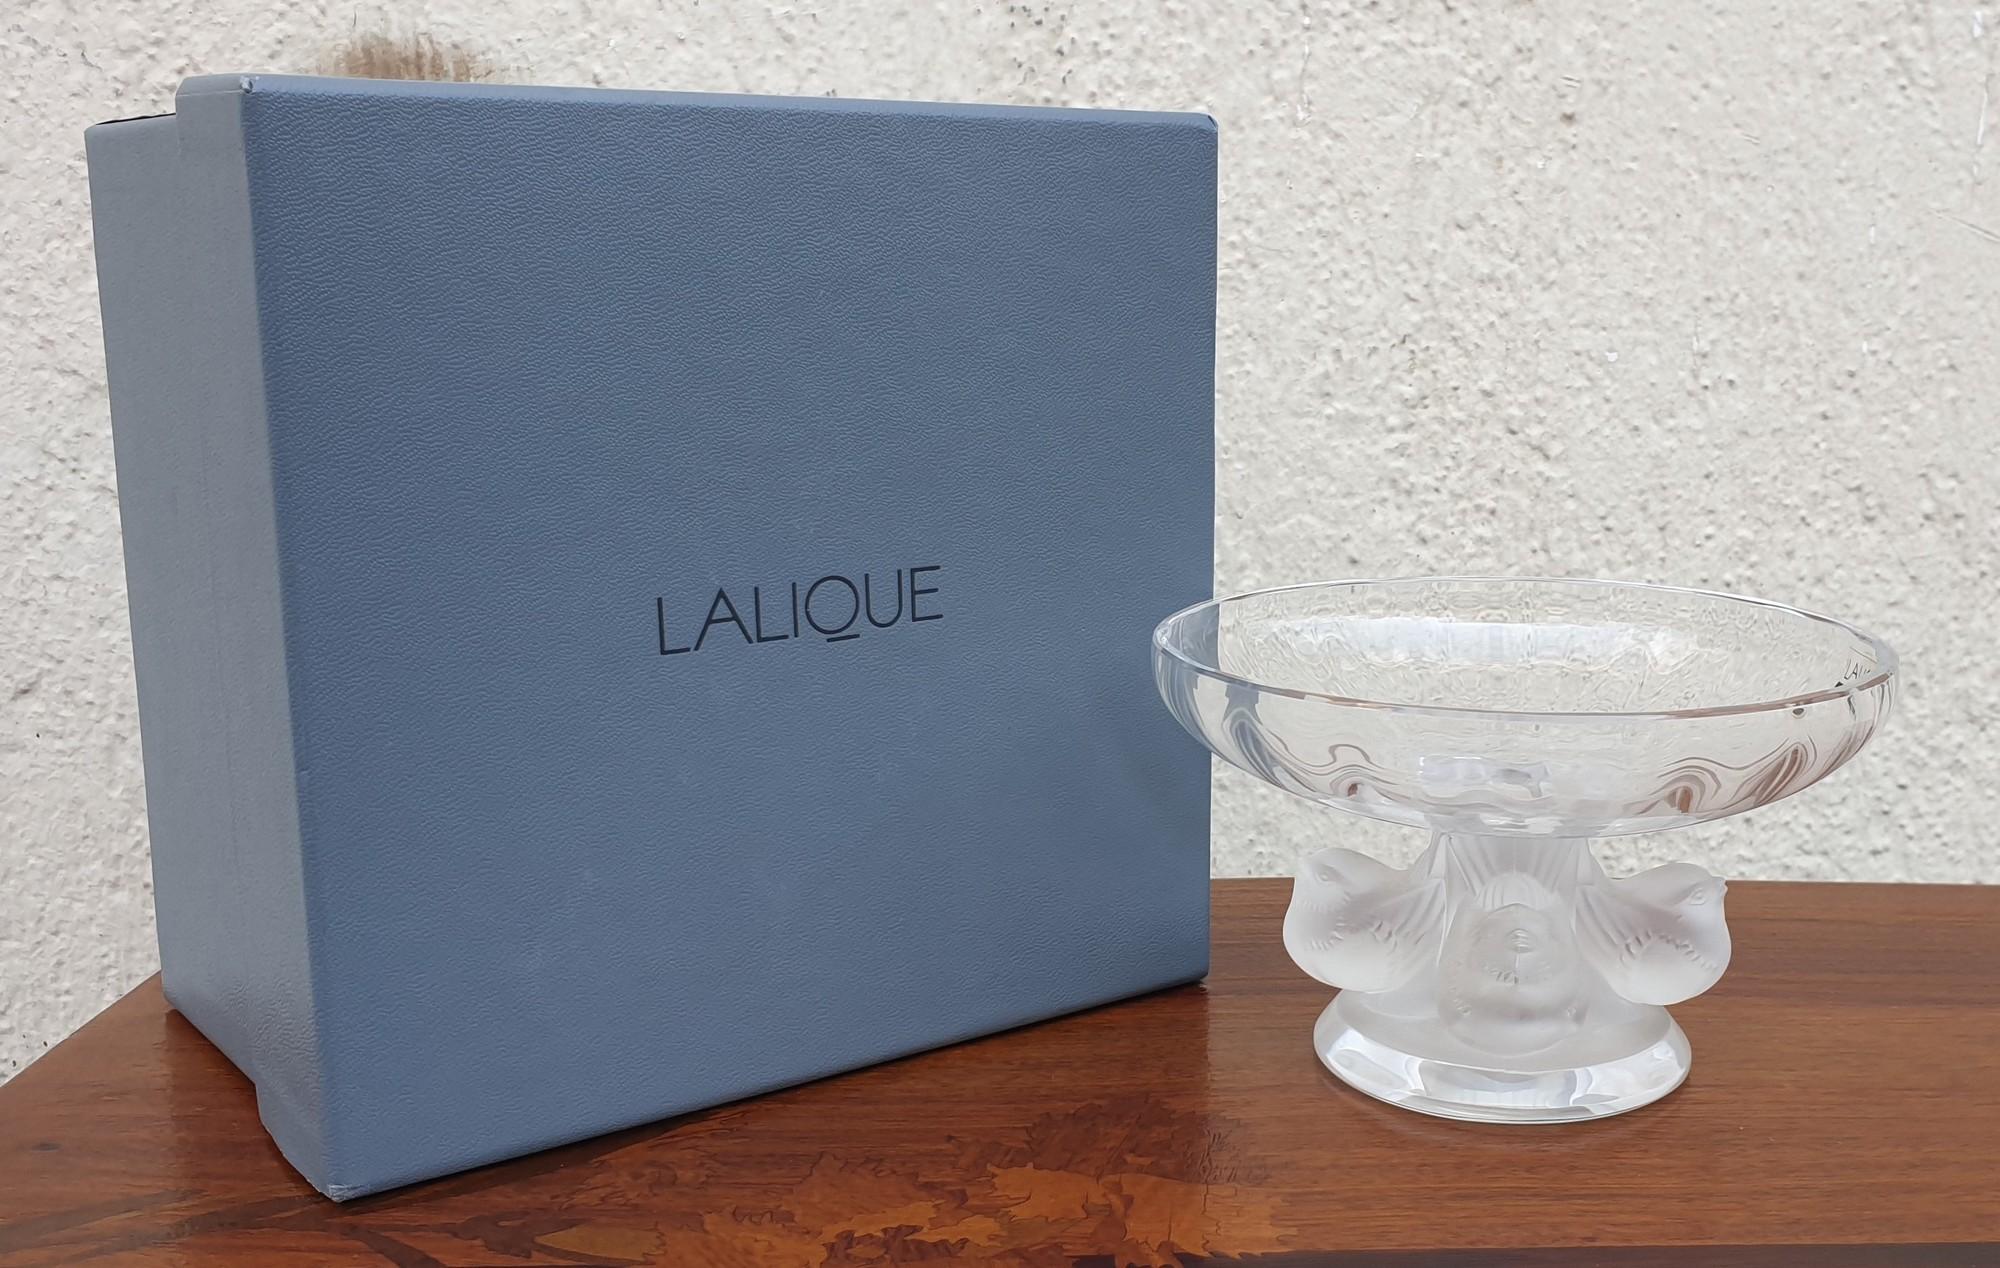 Lalique France, coupe modèle Nogent, en cristal clair satiné mat

Modèle créé en 1966 par Marc Lalique

Très bon état, dans son étui d'origine avec certificat

Hauteur 8.5 cm
diam 14cm approx